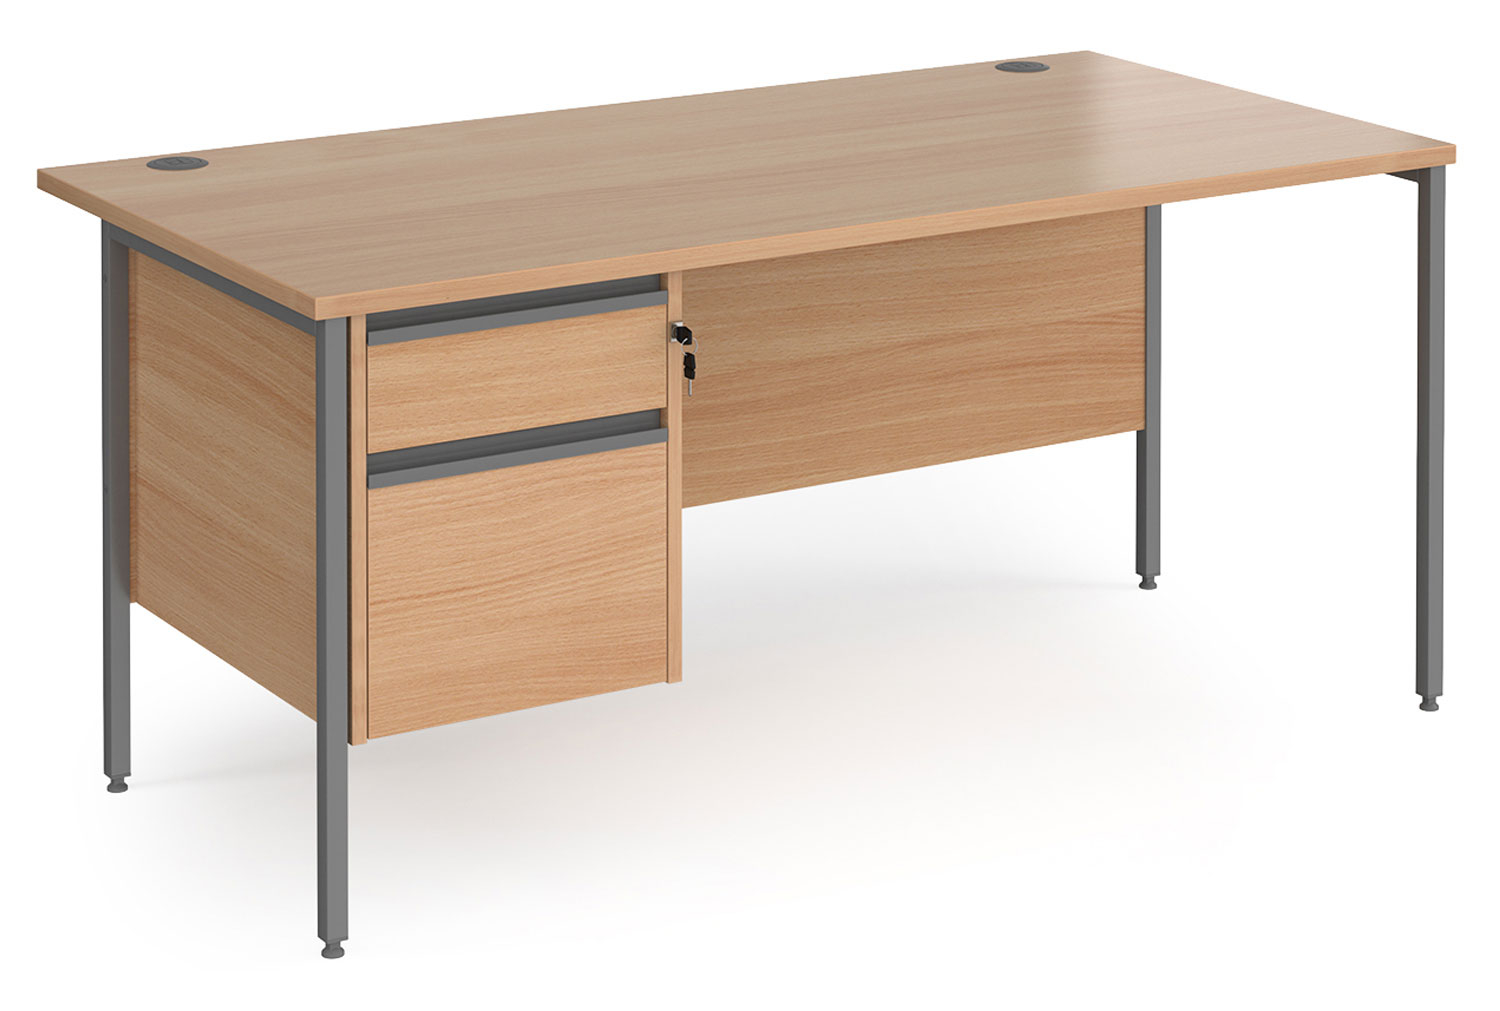 Value Line Classic+ Rectangular H-Leg Office Desk 2 Drawers (Graphite Leg), 160wx80dx73h (cm), Beech, Fully Installed